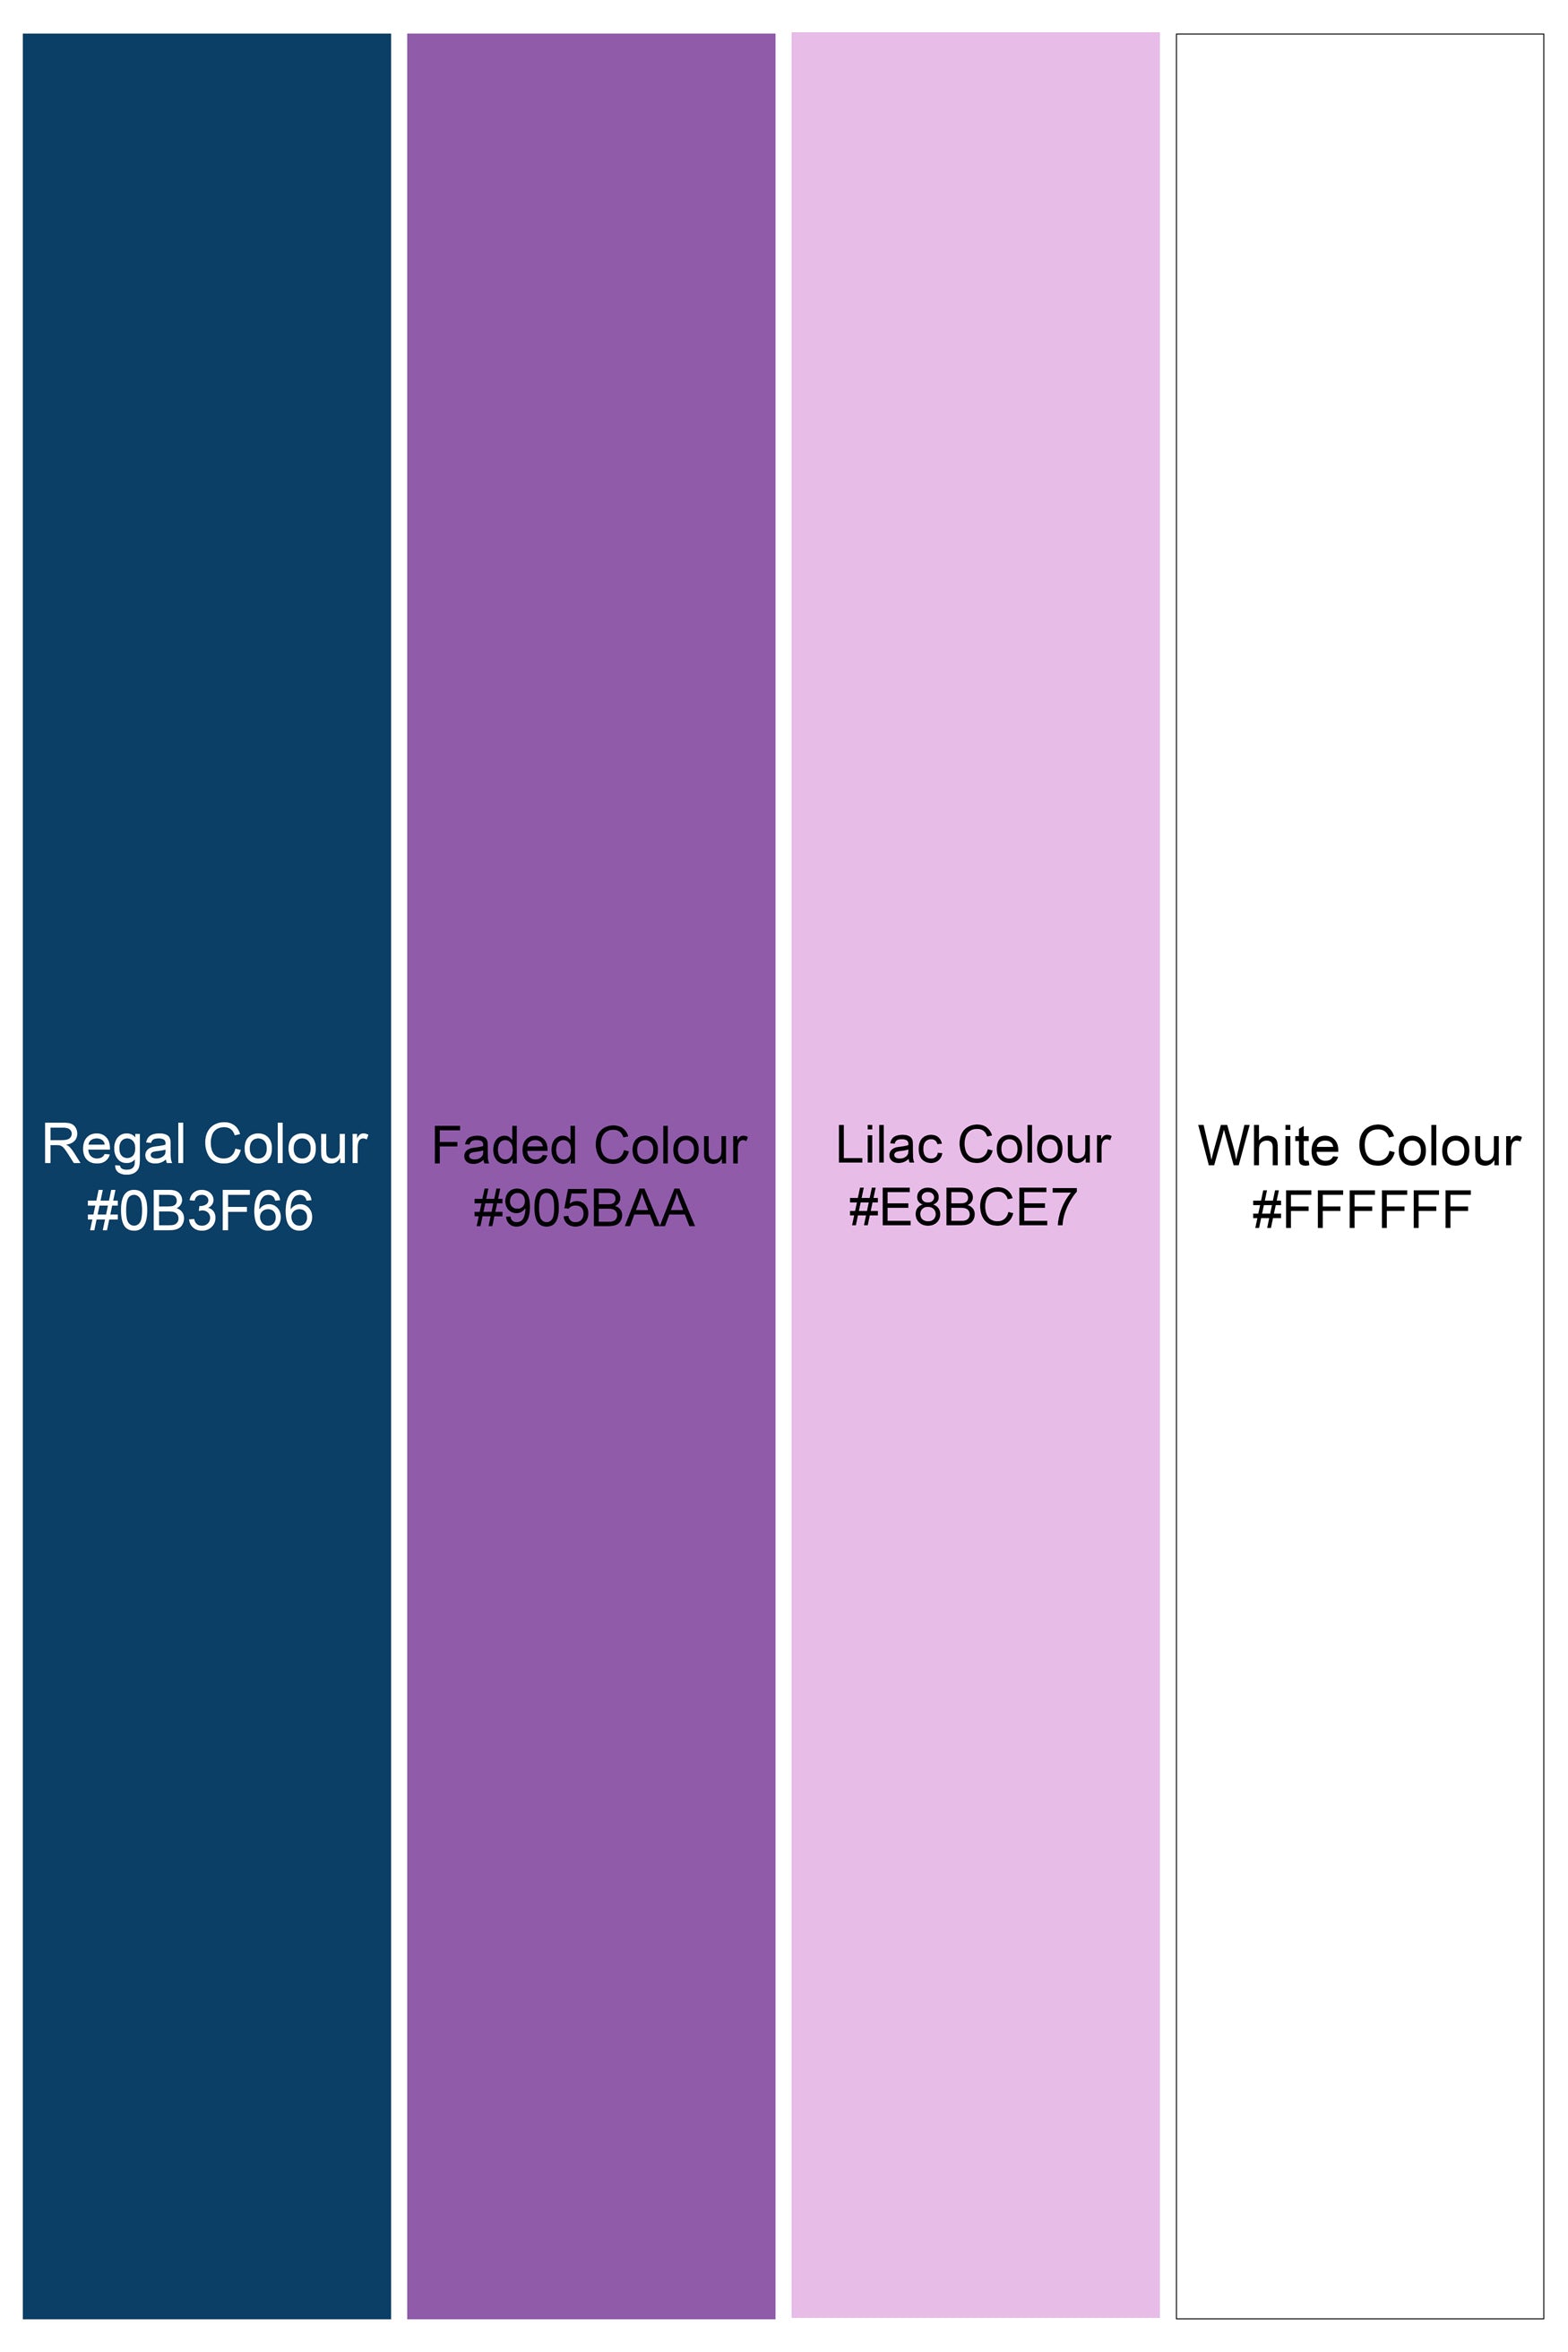 Regal Blue and Faded Purple Multicolour Tile Printed Subtle Sheen Super Soft Premium Cotton Designer Shirt 12185-M-BLK-38, 12185-M-BLK-H-38, 12185-M-BLK-39, 12185-M-BLK-H-39, 12185-M-BLK-40, 12185-M-BLK-H-40, 12185-M-BLK-42, 12185-M-BLK-H-42, 12185-M-BLK-44, 12185-M-BLK-H-44, 12185-M-BLK-46, 12185-M-BLK-H-46, 12185-M-BLK-48, 12185-M-BLK-H-48, 12185-M-BLK-50, 12185-M-BLK-H-50, 12185-M-BLK-52, 12185-M-BLK-H-52